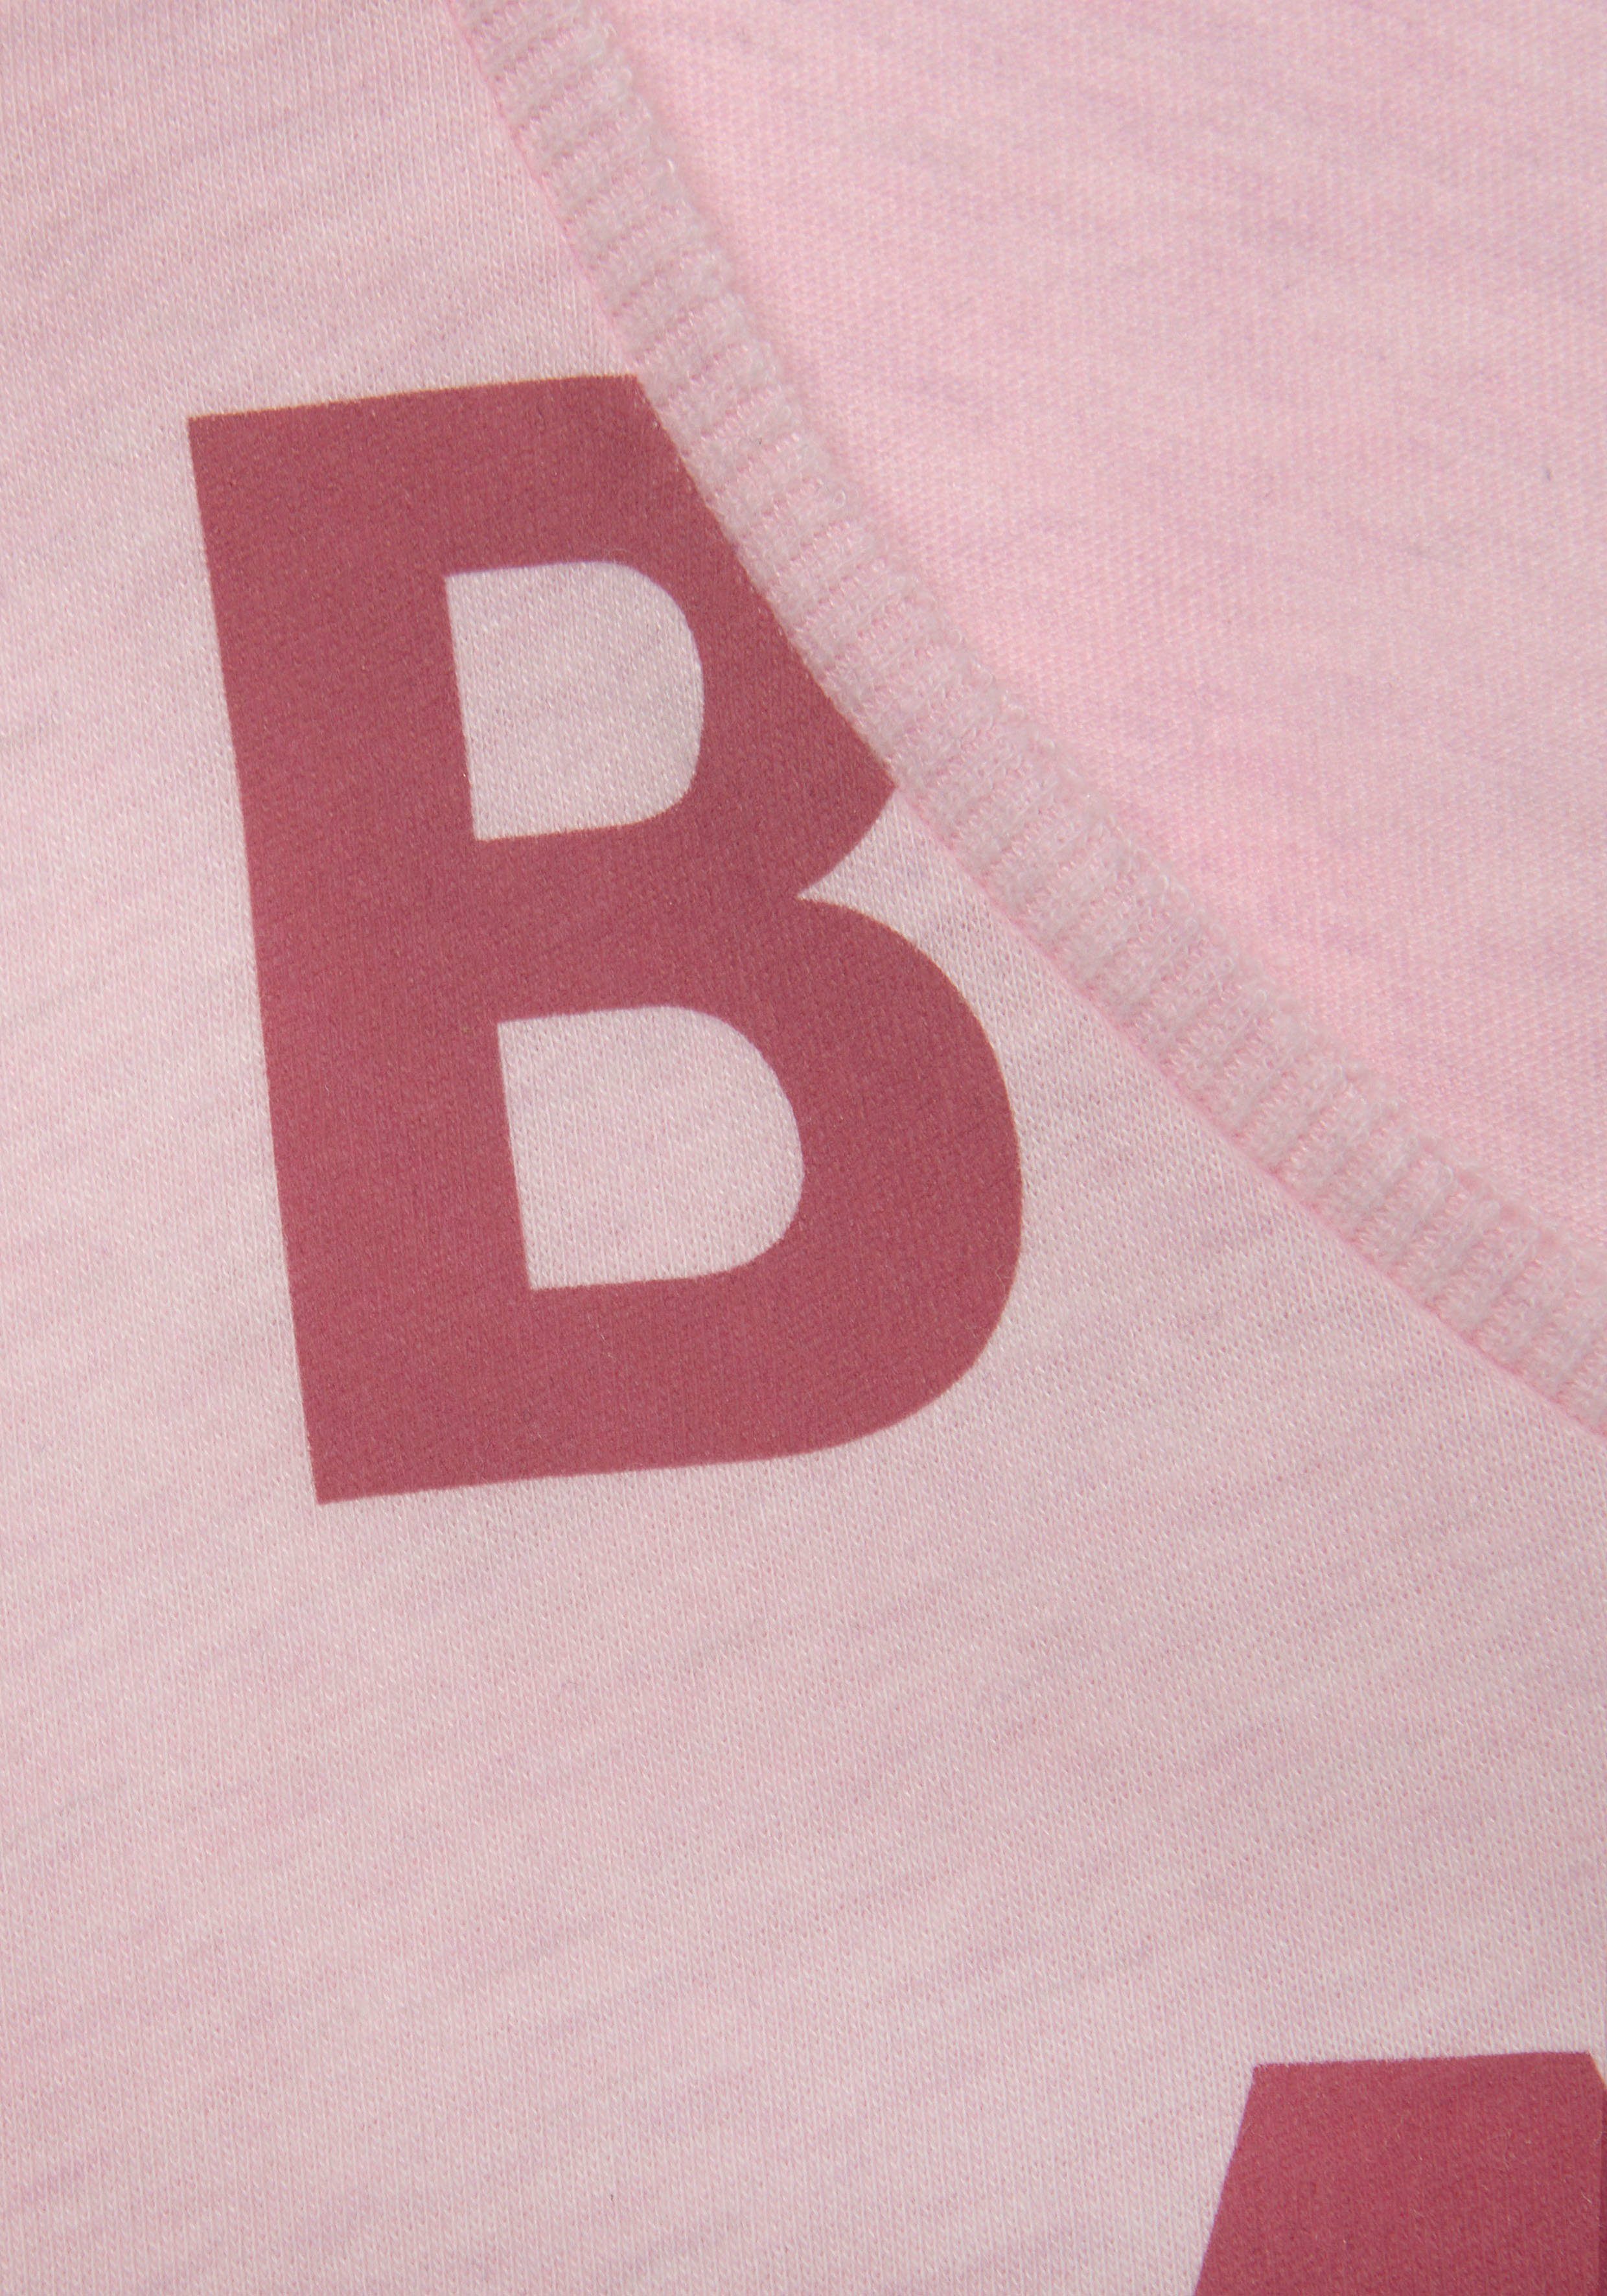 Elbsand T-Shirt aus und weichem sportlich Jersey, bequem Kurzarmshirt, rosa